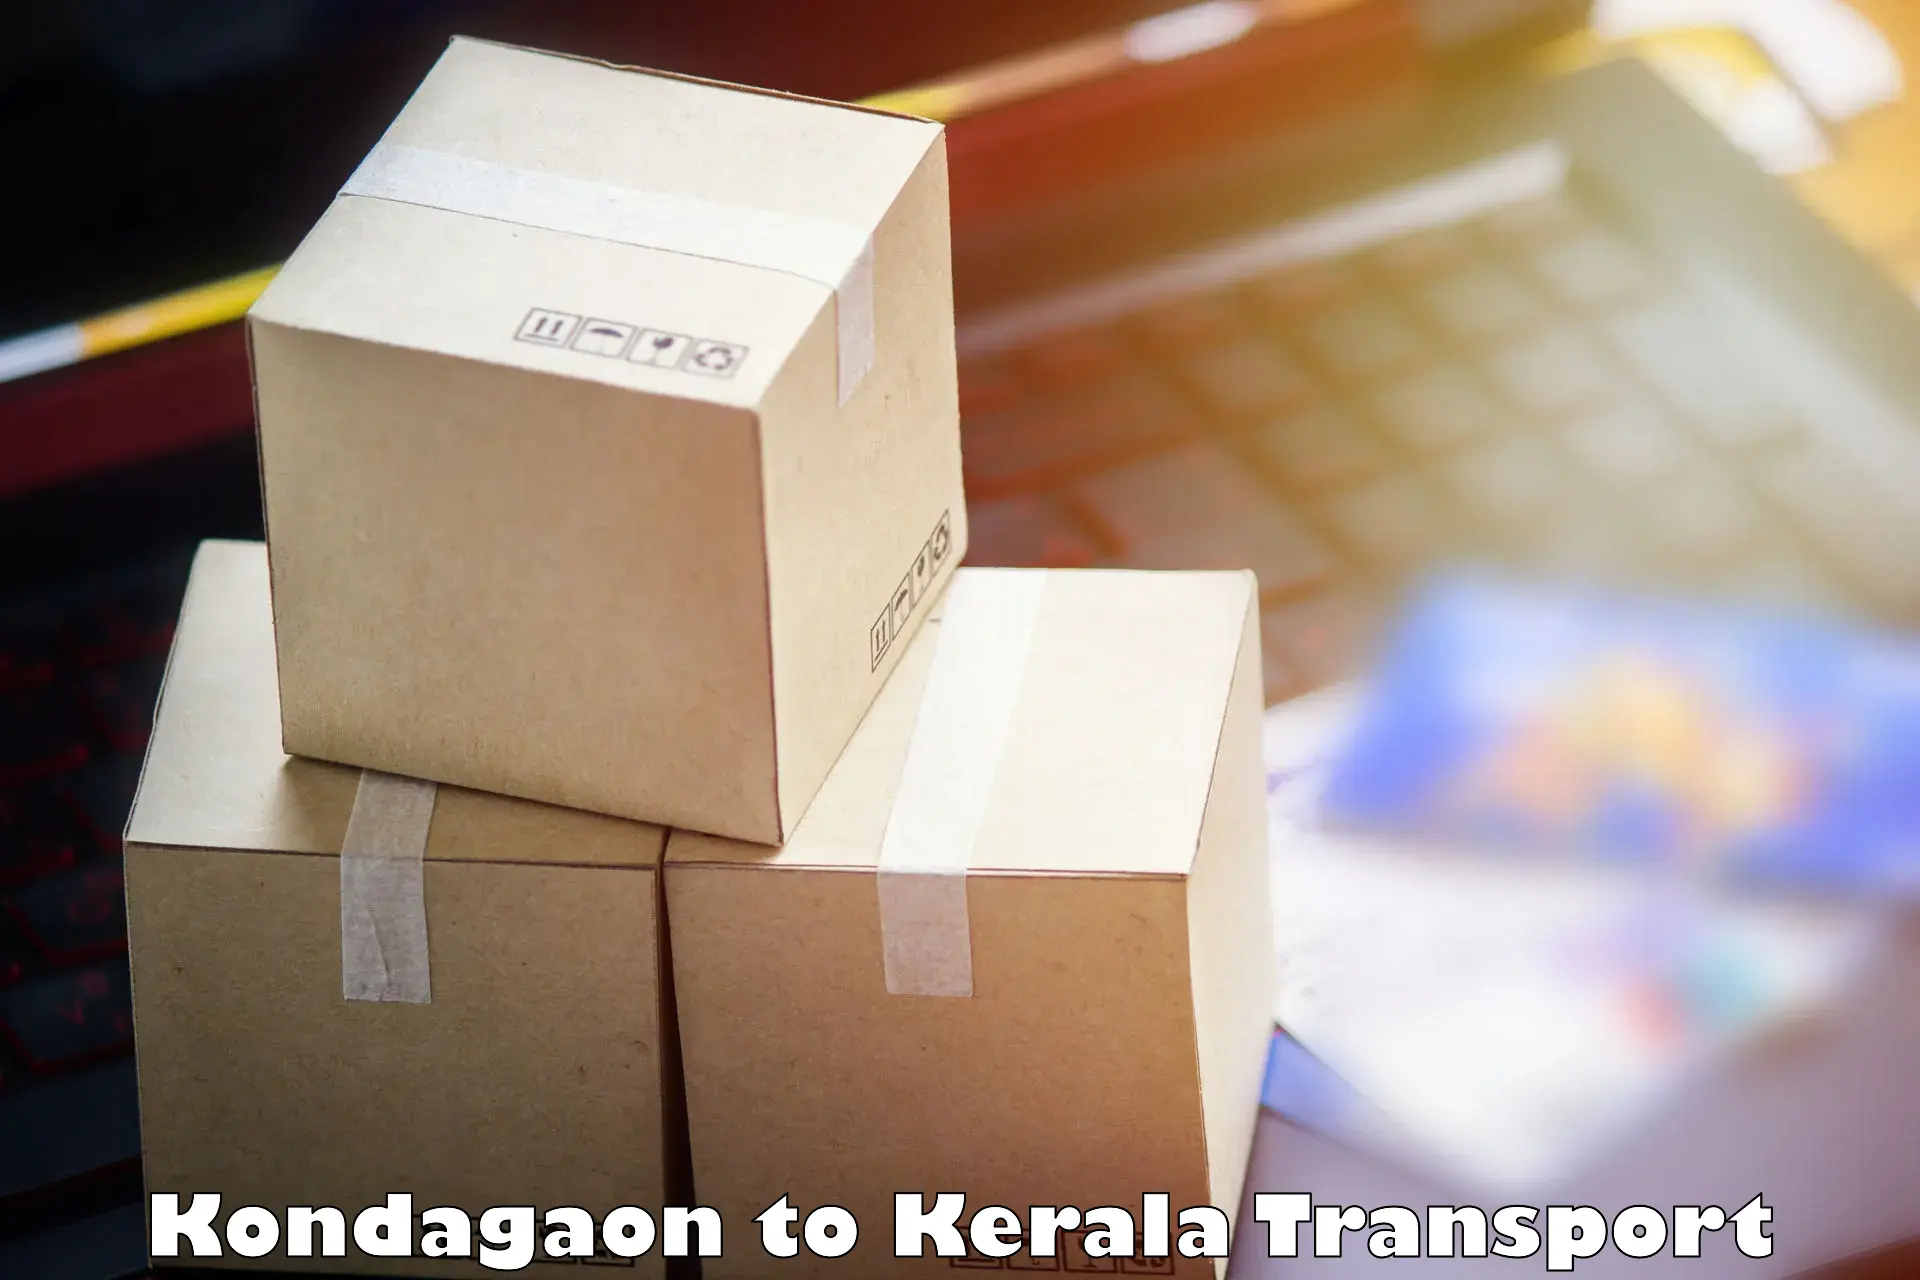 Furniture transport service Kondagaon to Manthuka